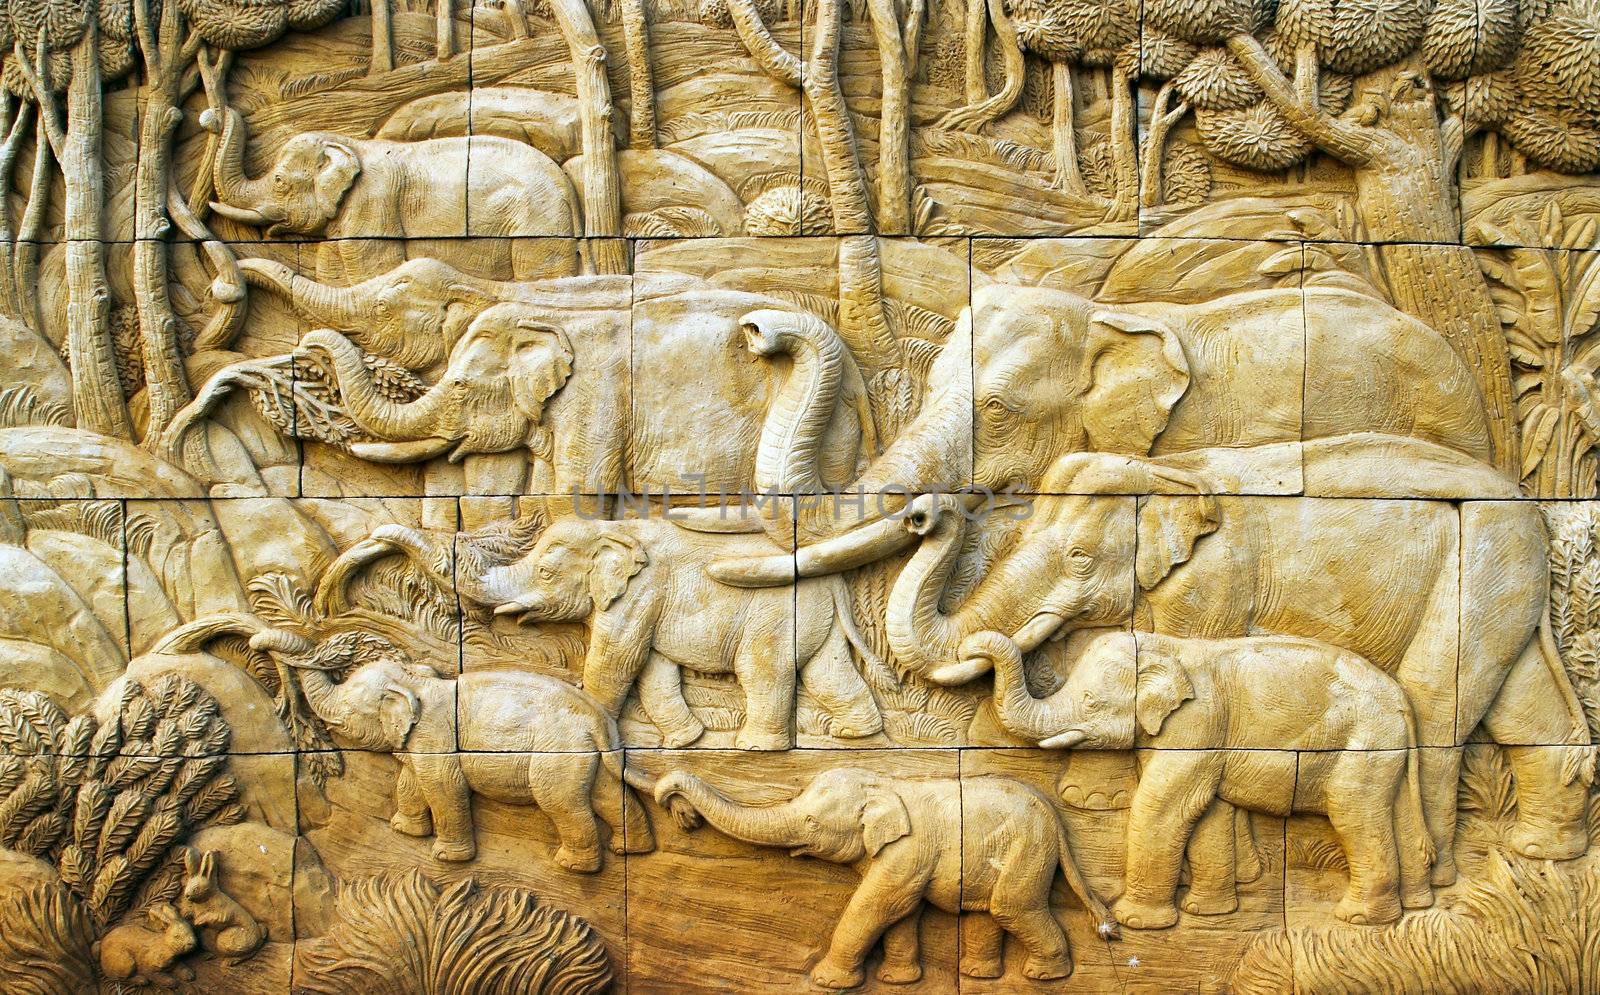 carved Elephant on stone wall by geargodz